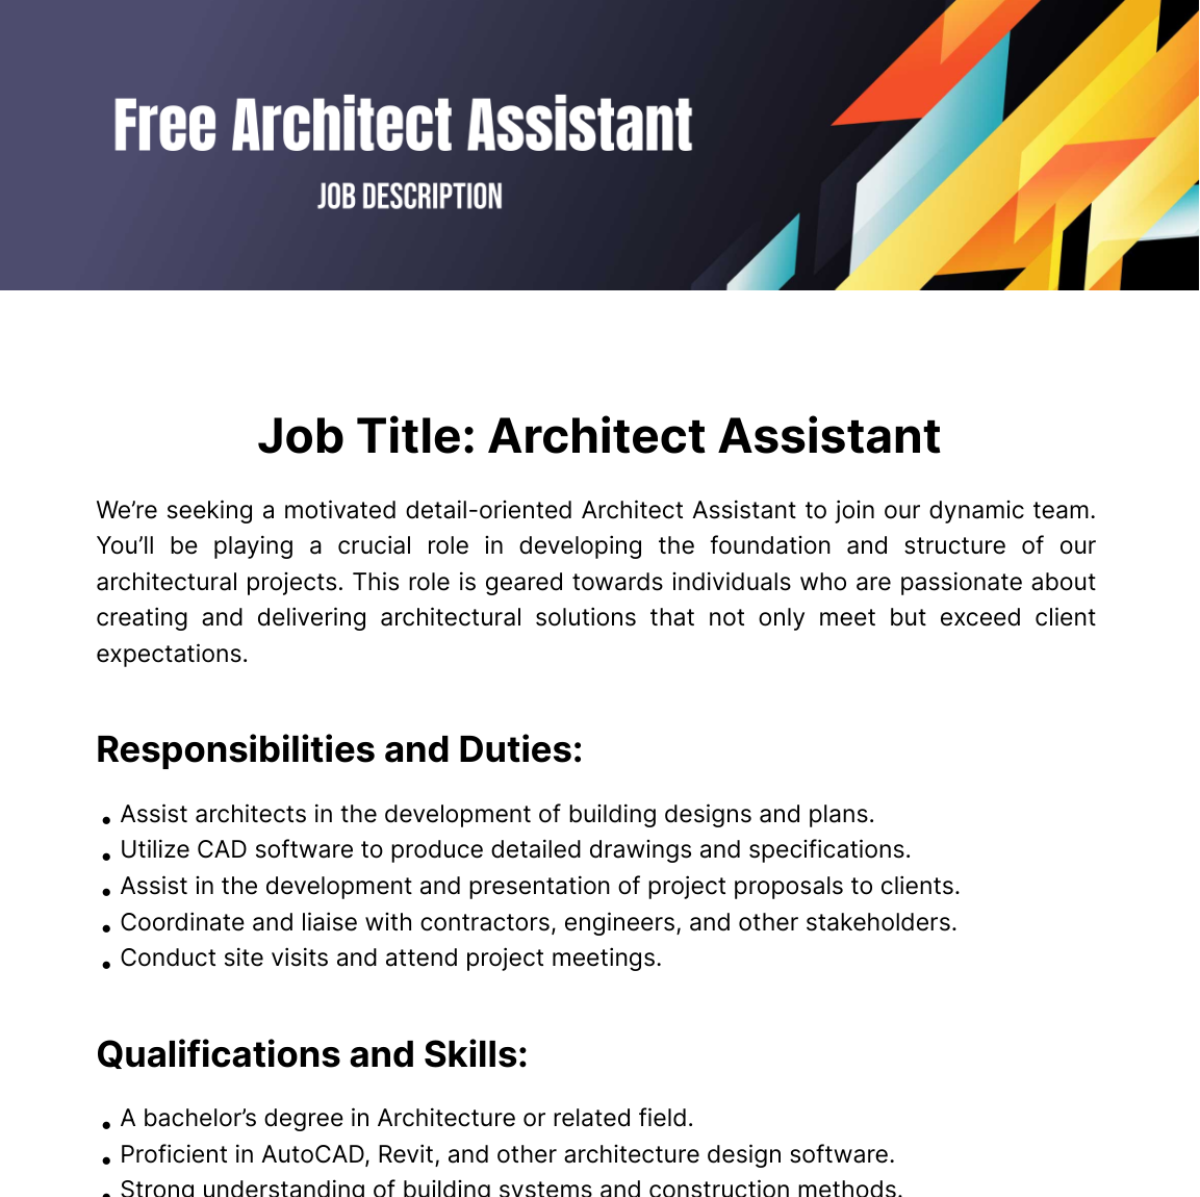 Free Architect Assistant Job Description Template